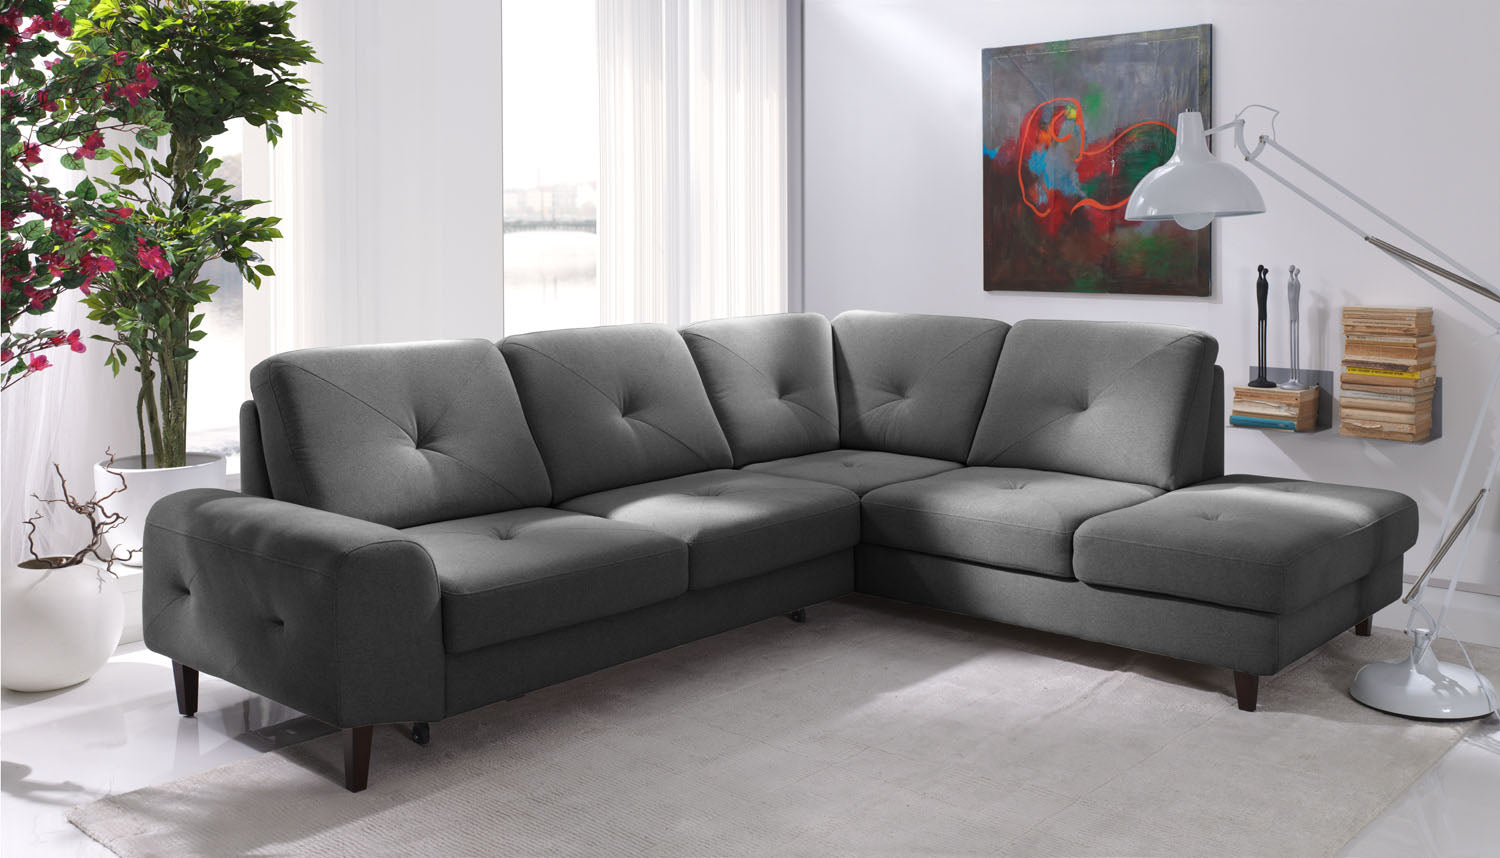 Dīvāns LAY 265/89/96 cm - N1 Home